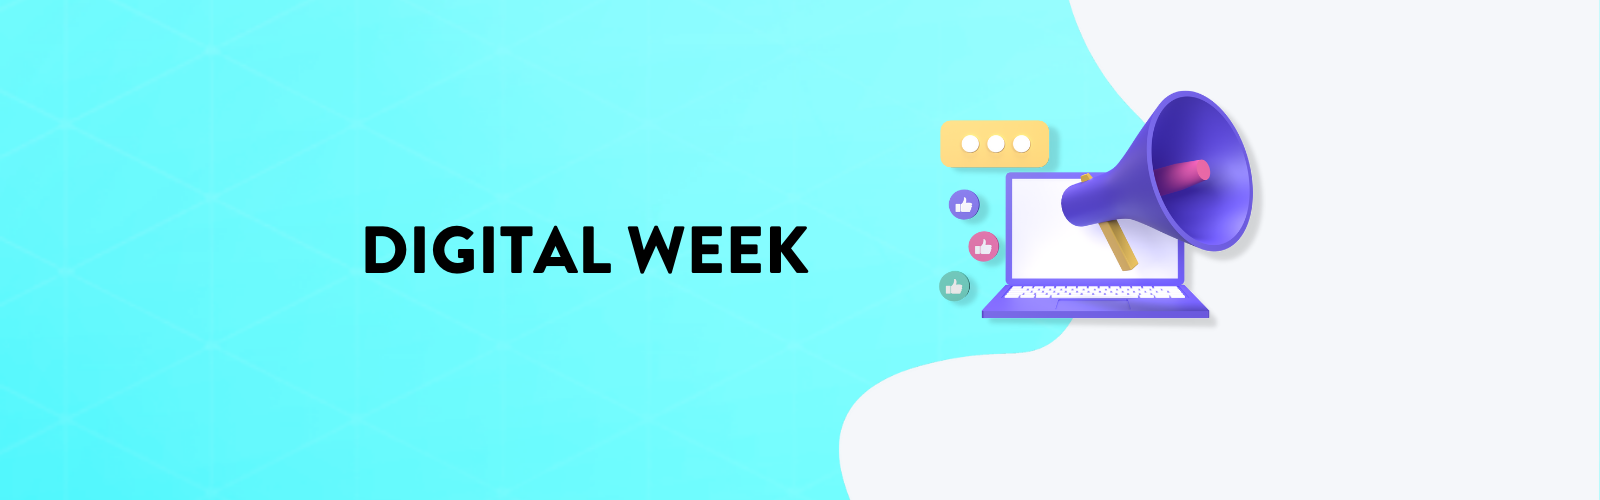 Digital week